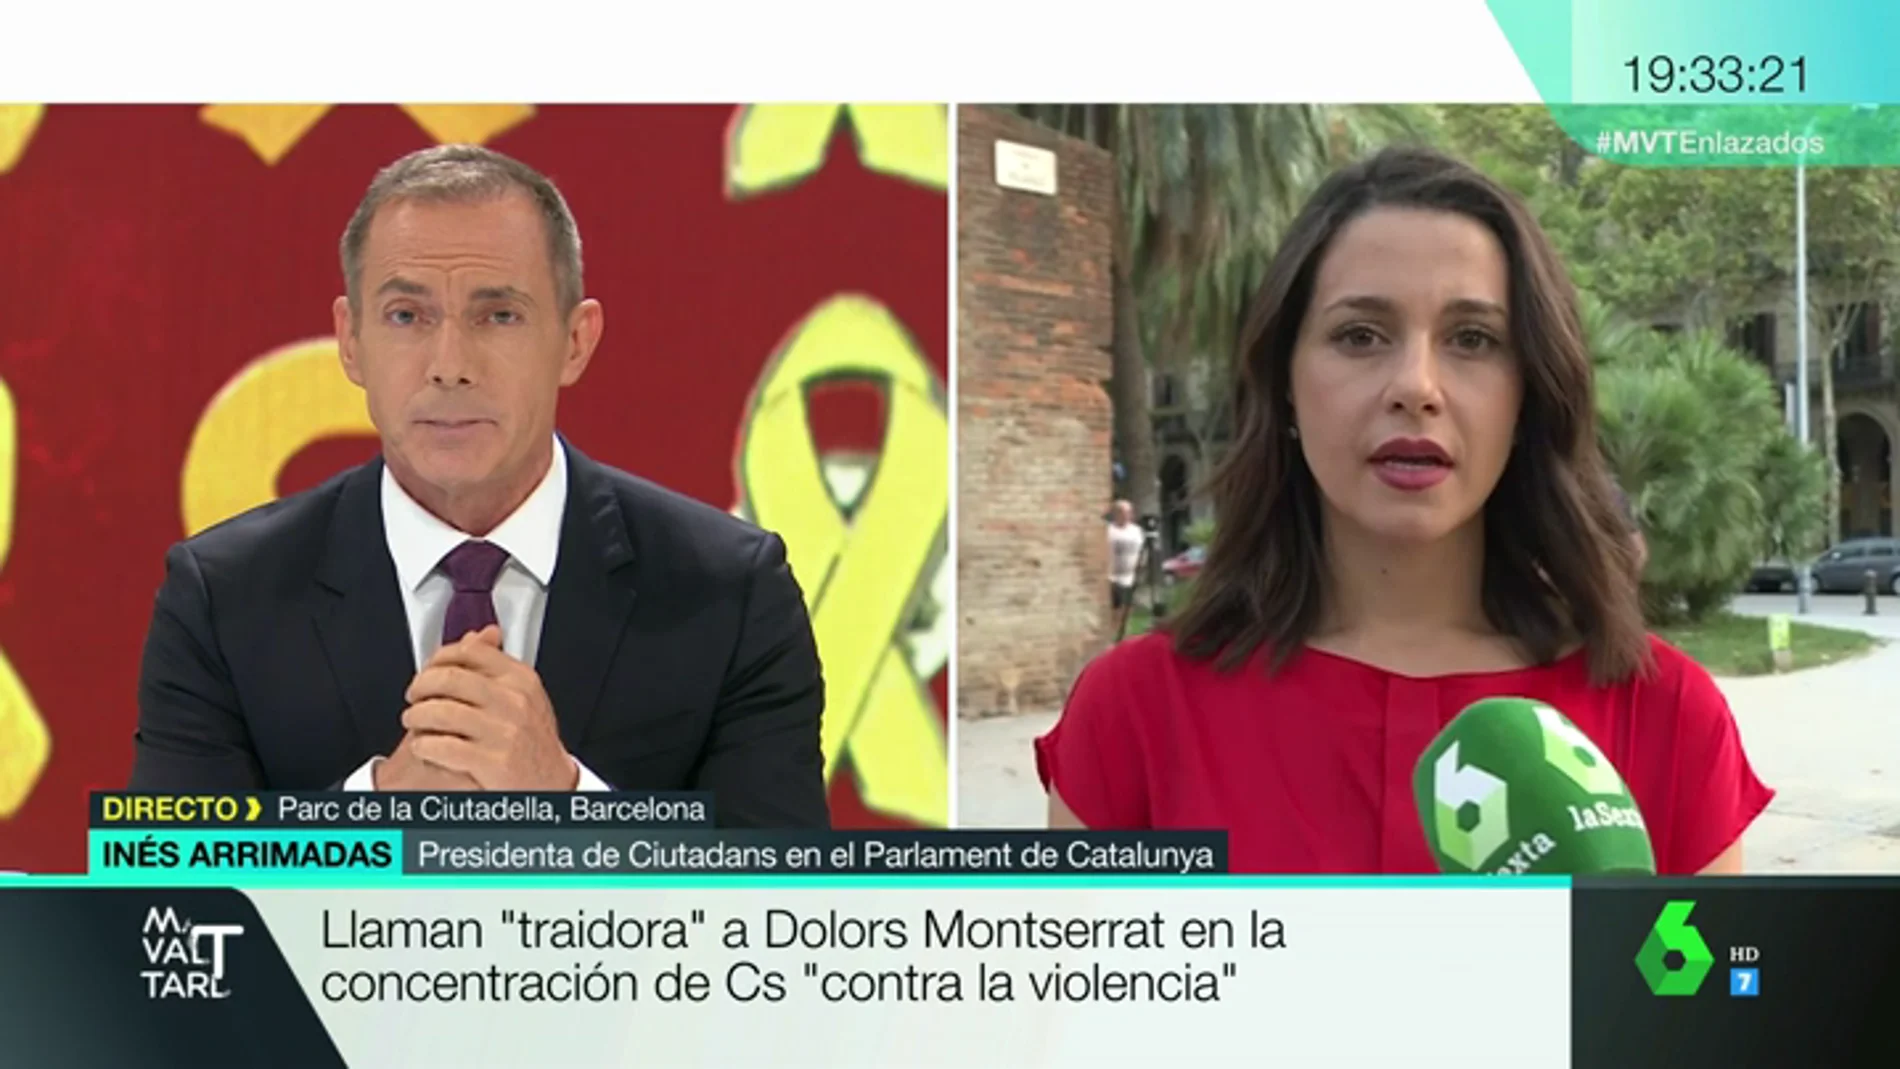 Inés Arrimadas, sobre los momentos de tensión en la concentración organizada por C's: "Era el día de dar apoyo, no de manifestarnos en contra de nada"